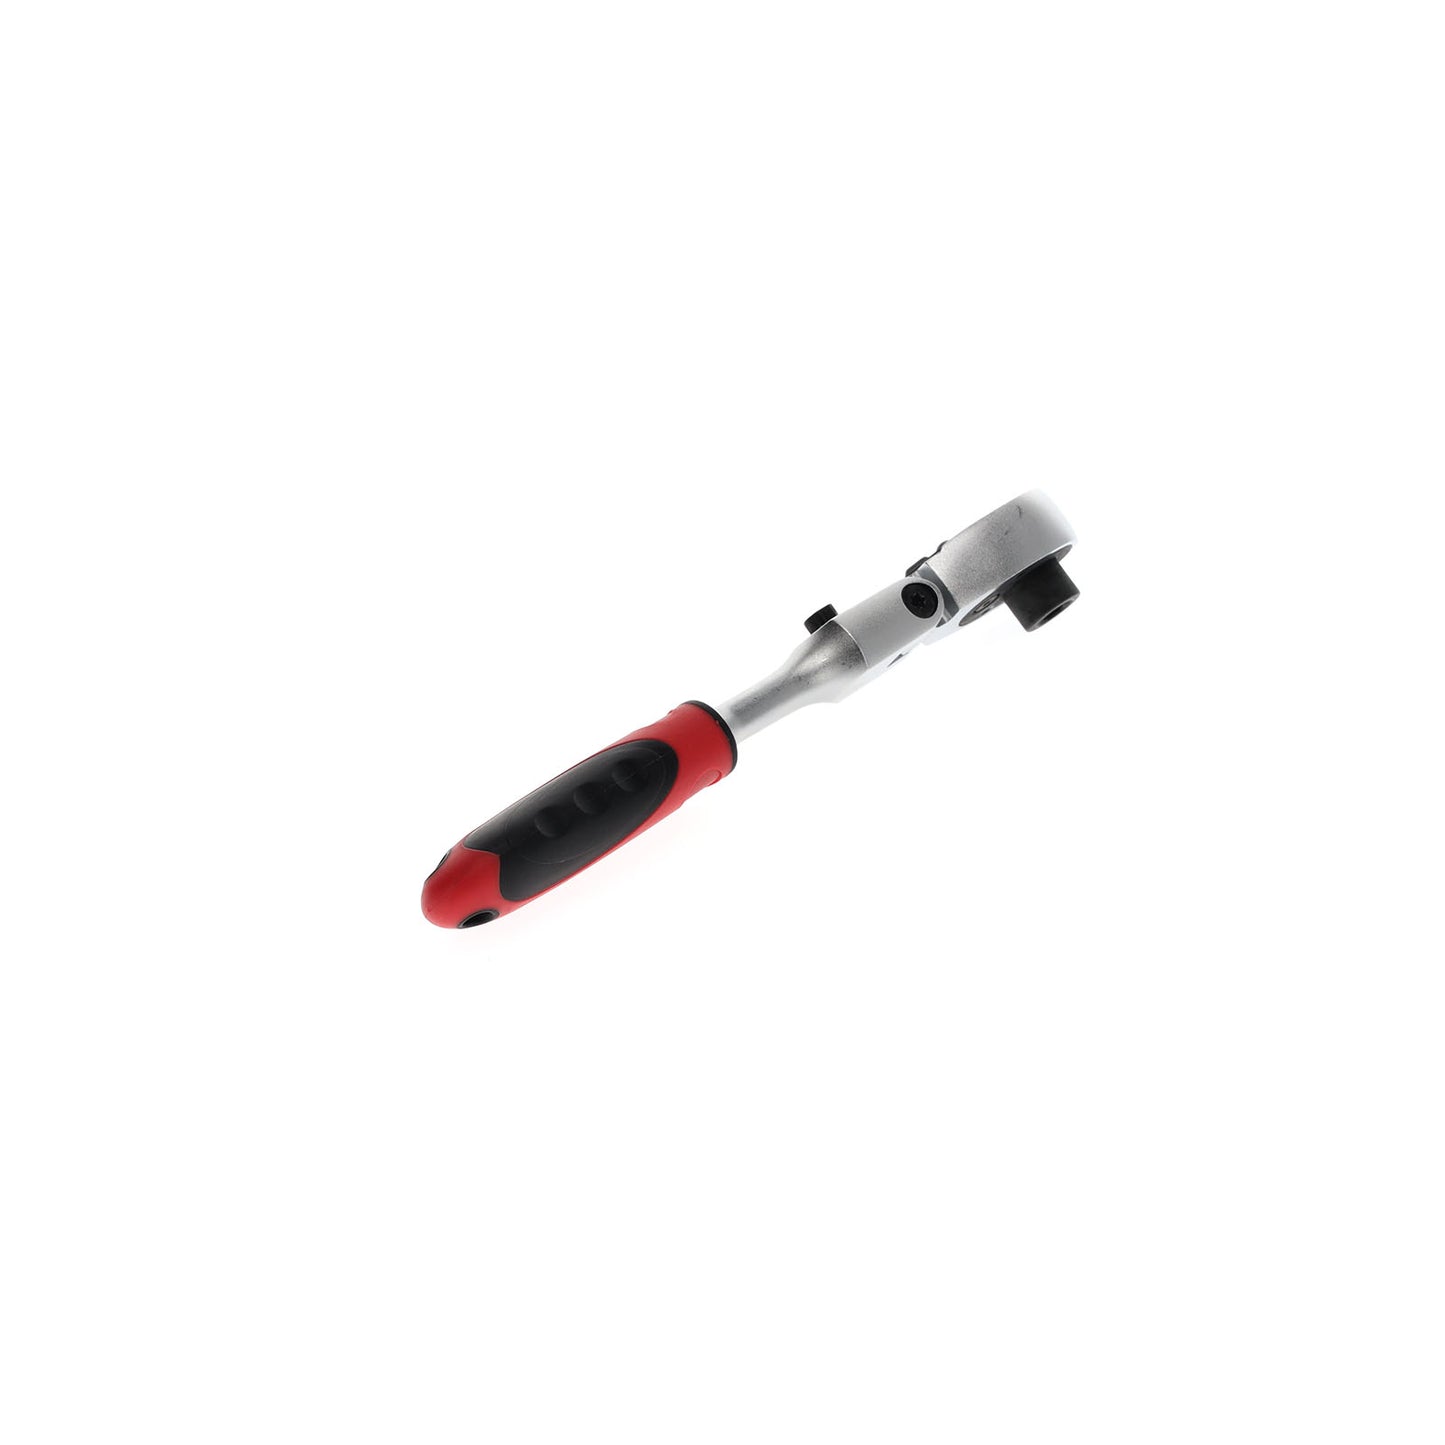 GEDORE rouge R40170027 - Cliquet à embout articulé bi-composant, droite/gauche. 1/4" (3300160)